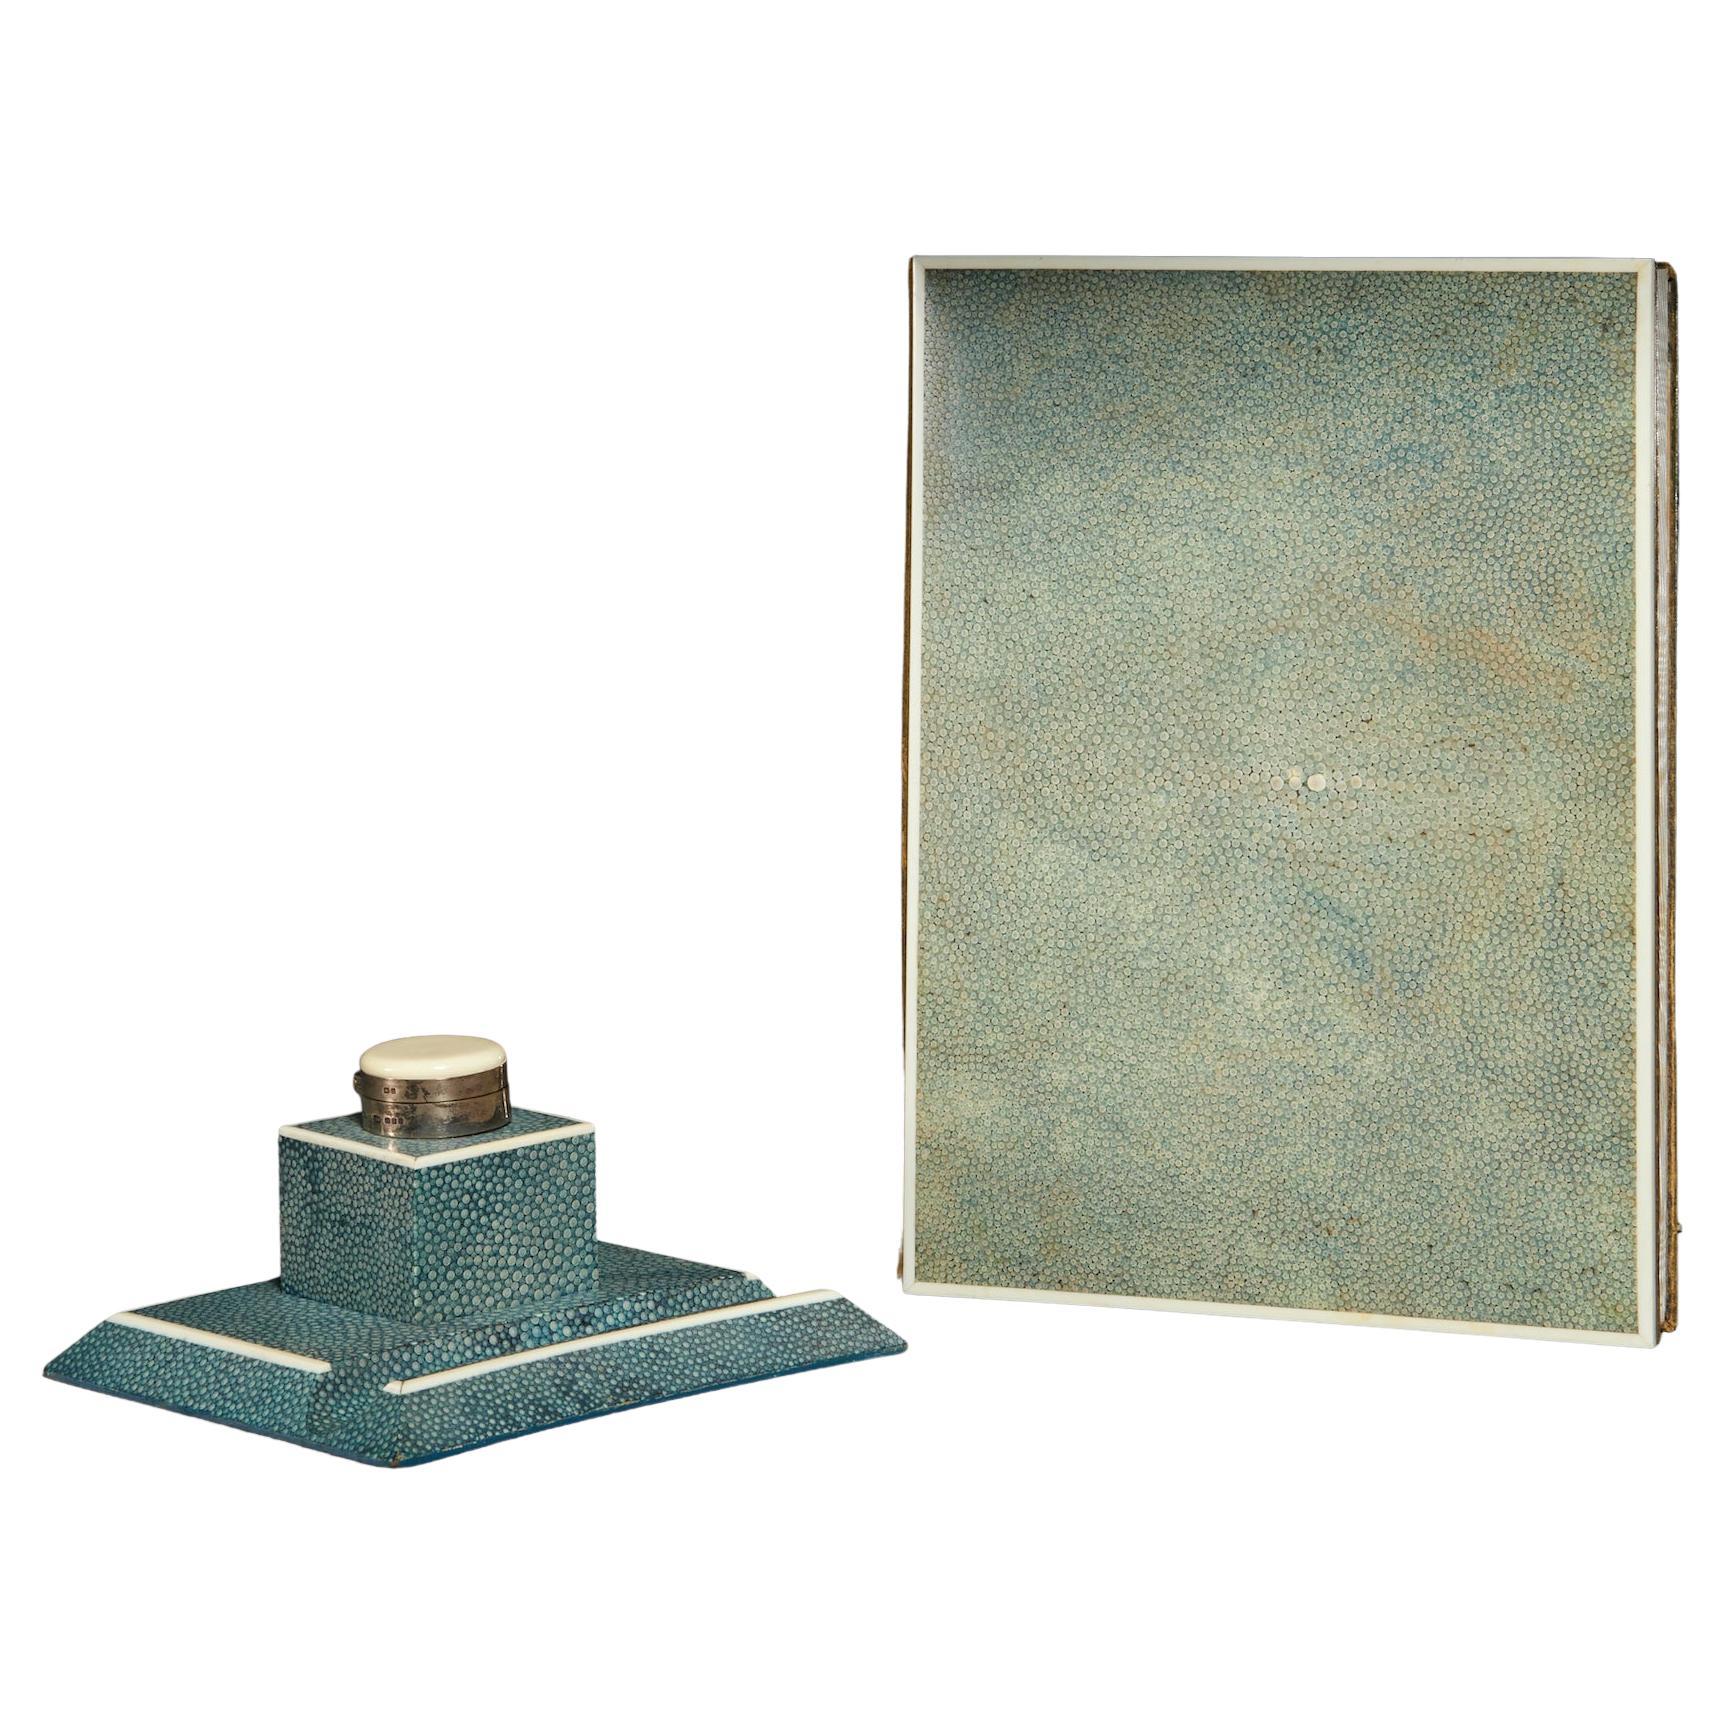 Englisches Schreibtischset aus blauem Chagrinleder und Tintenfass aus der englischen Art déco-Periode